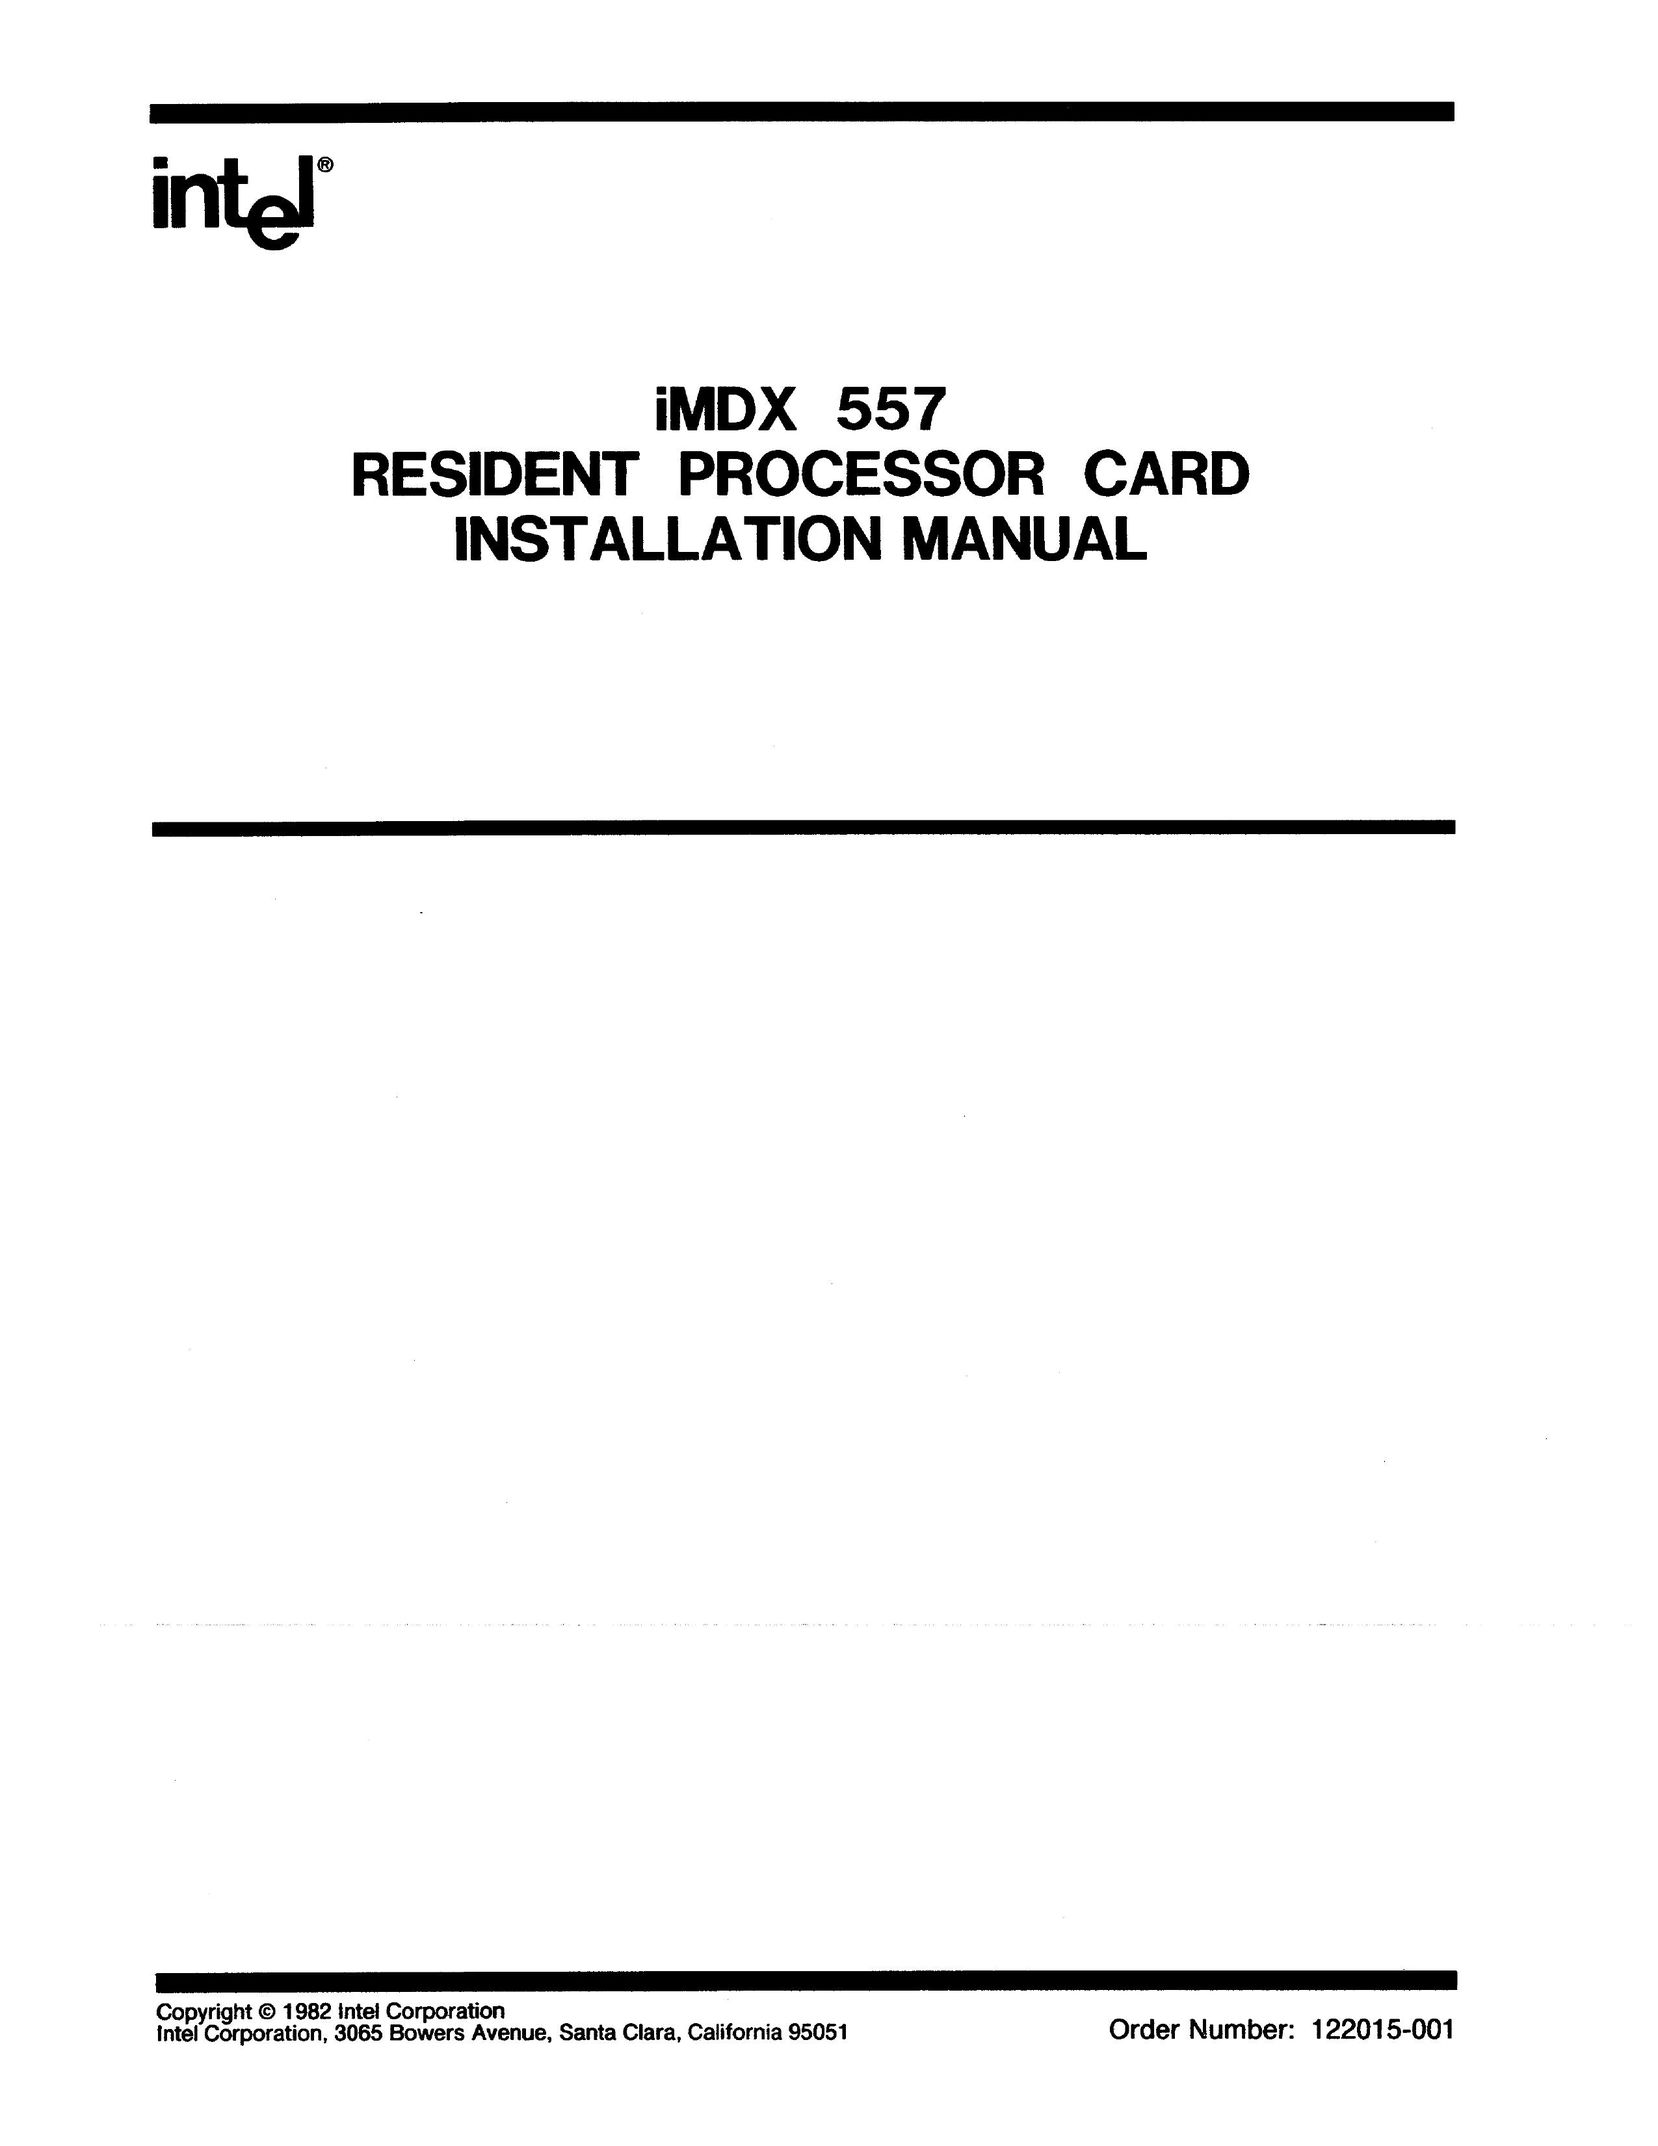 Intel iMDX 557 Card Game User Manual